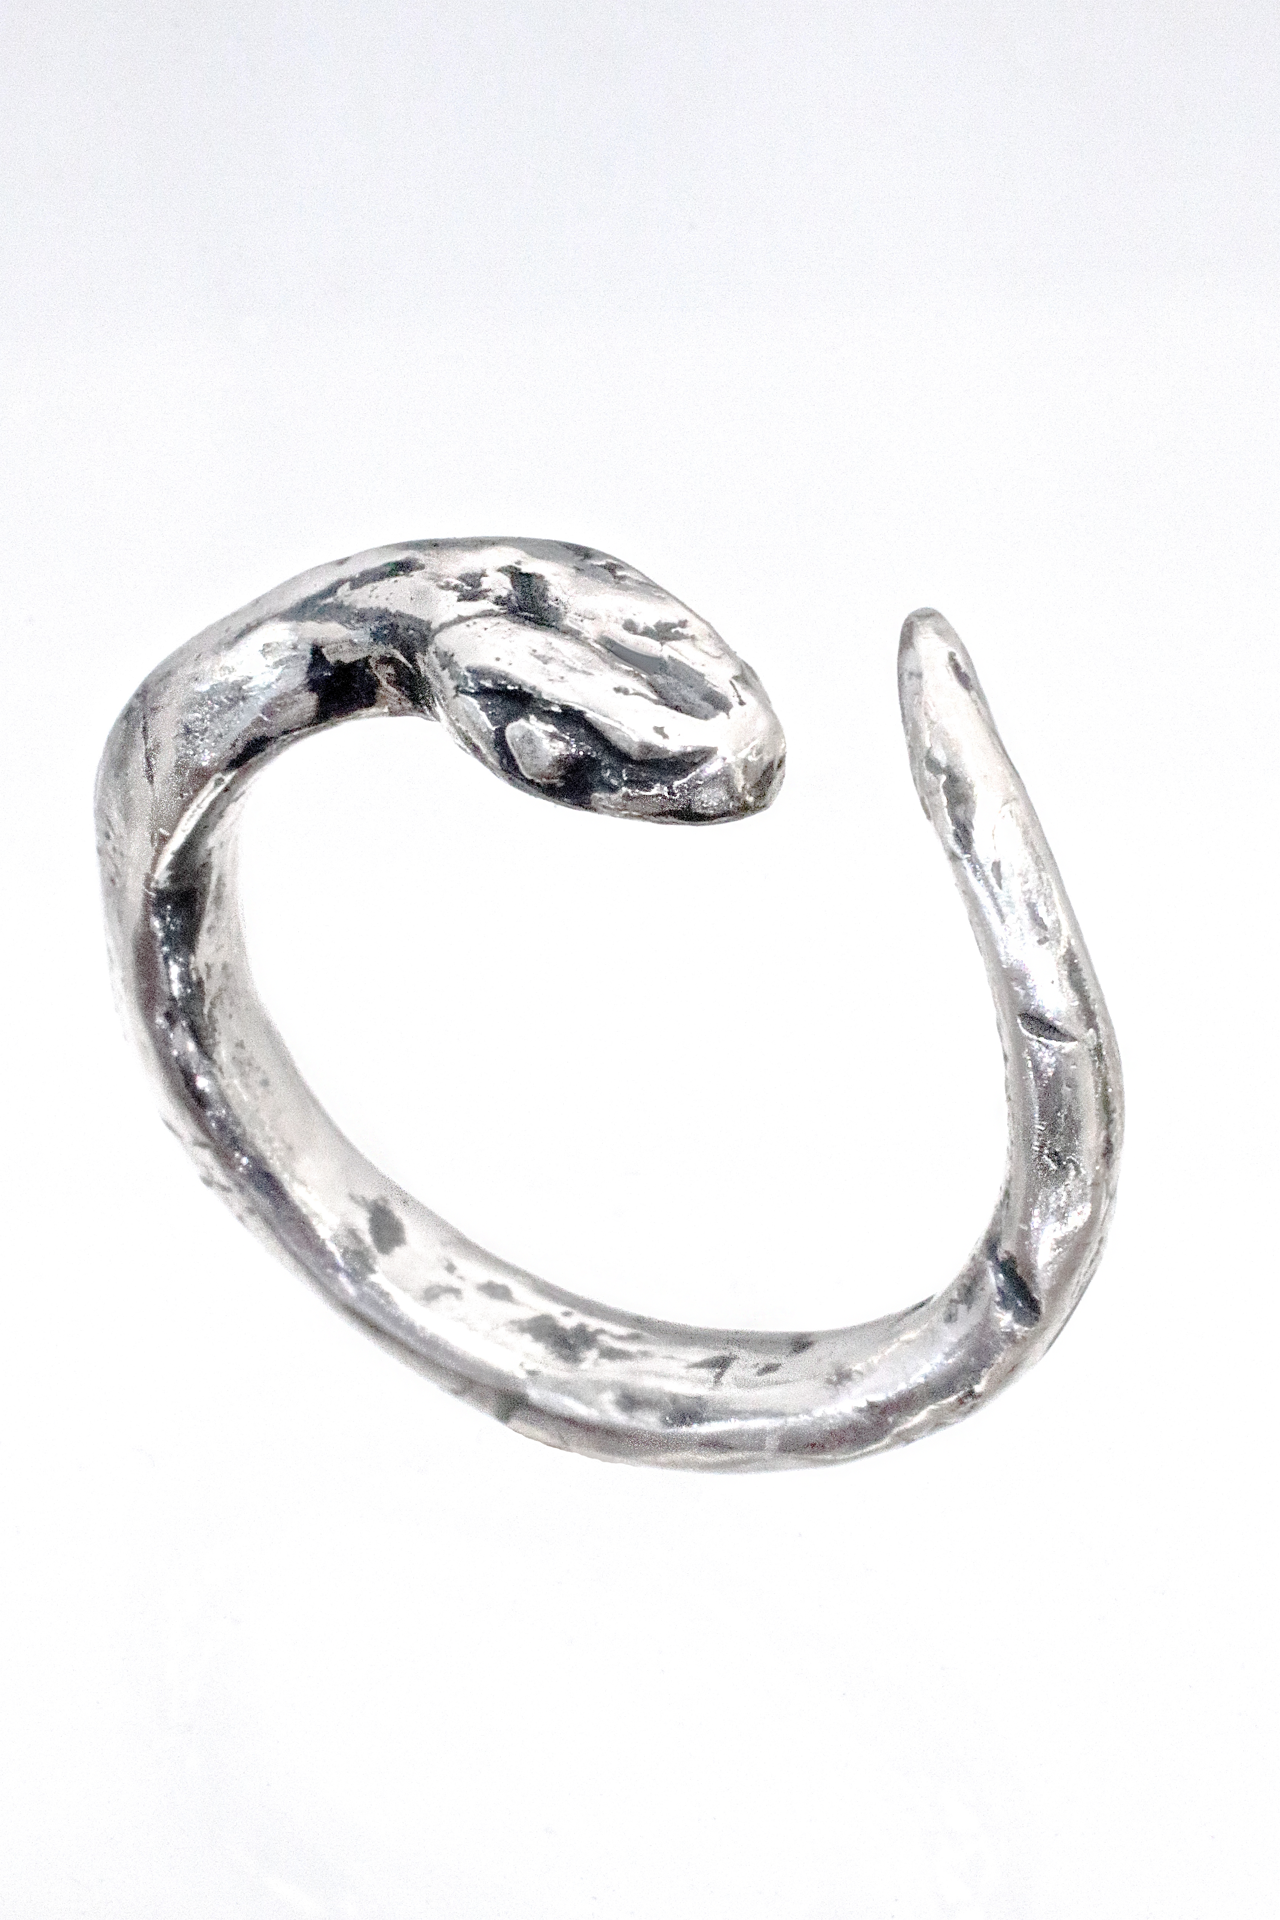 Buy University Trendz Silver Plated Alloy Snake Finger Ring for Men & Women  at Amazon.in